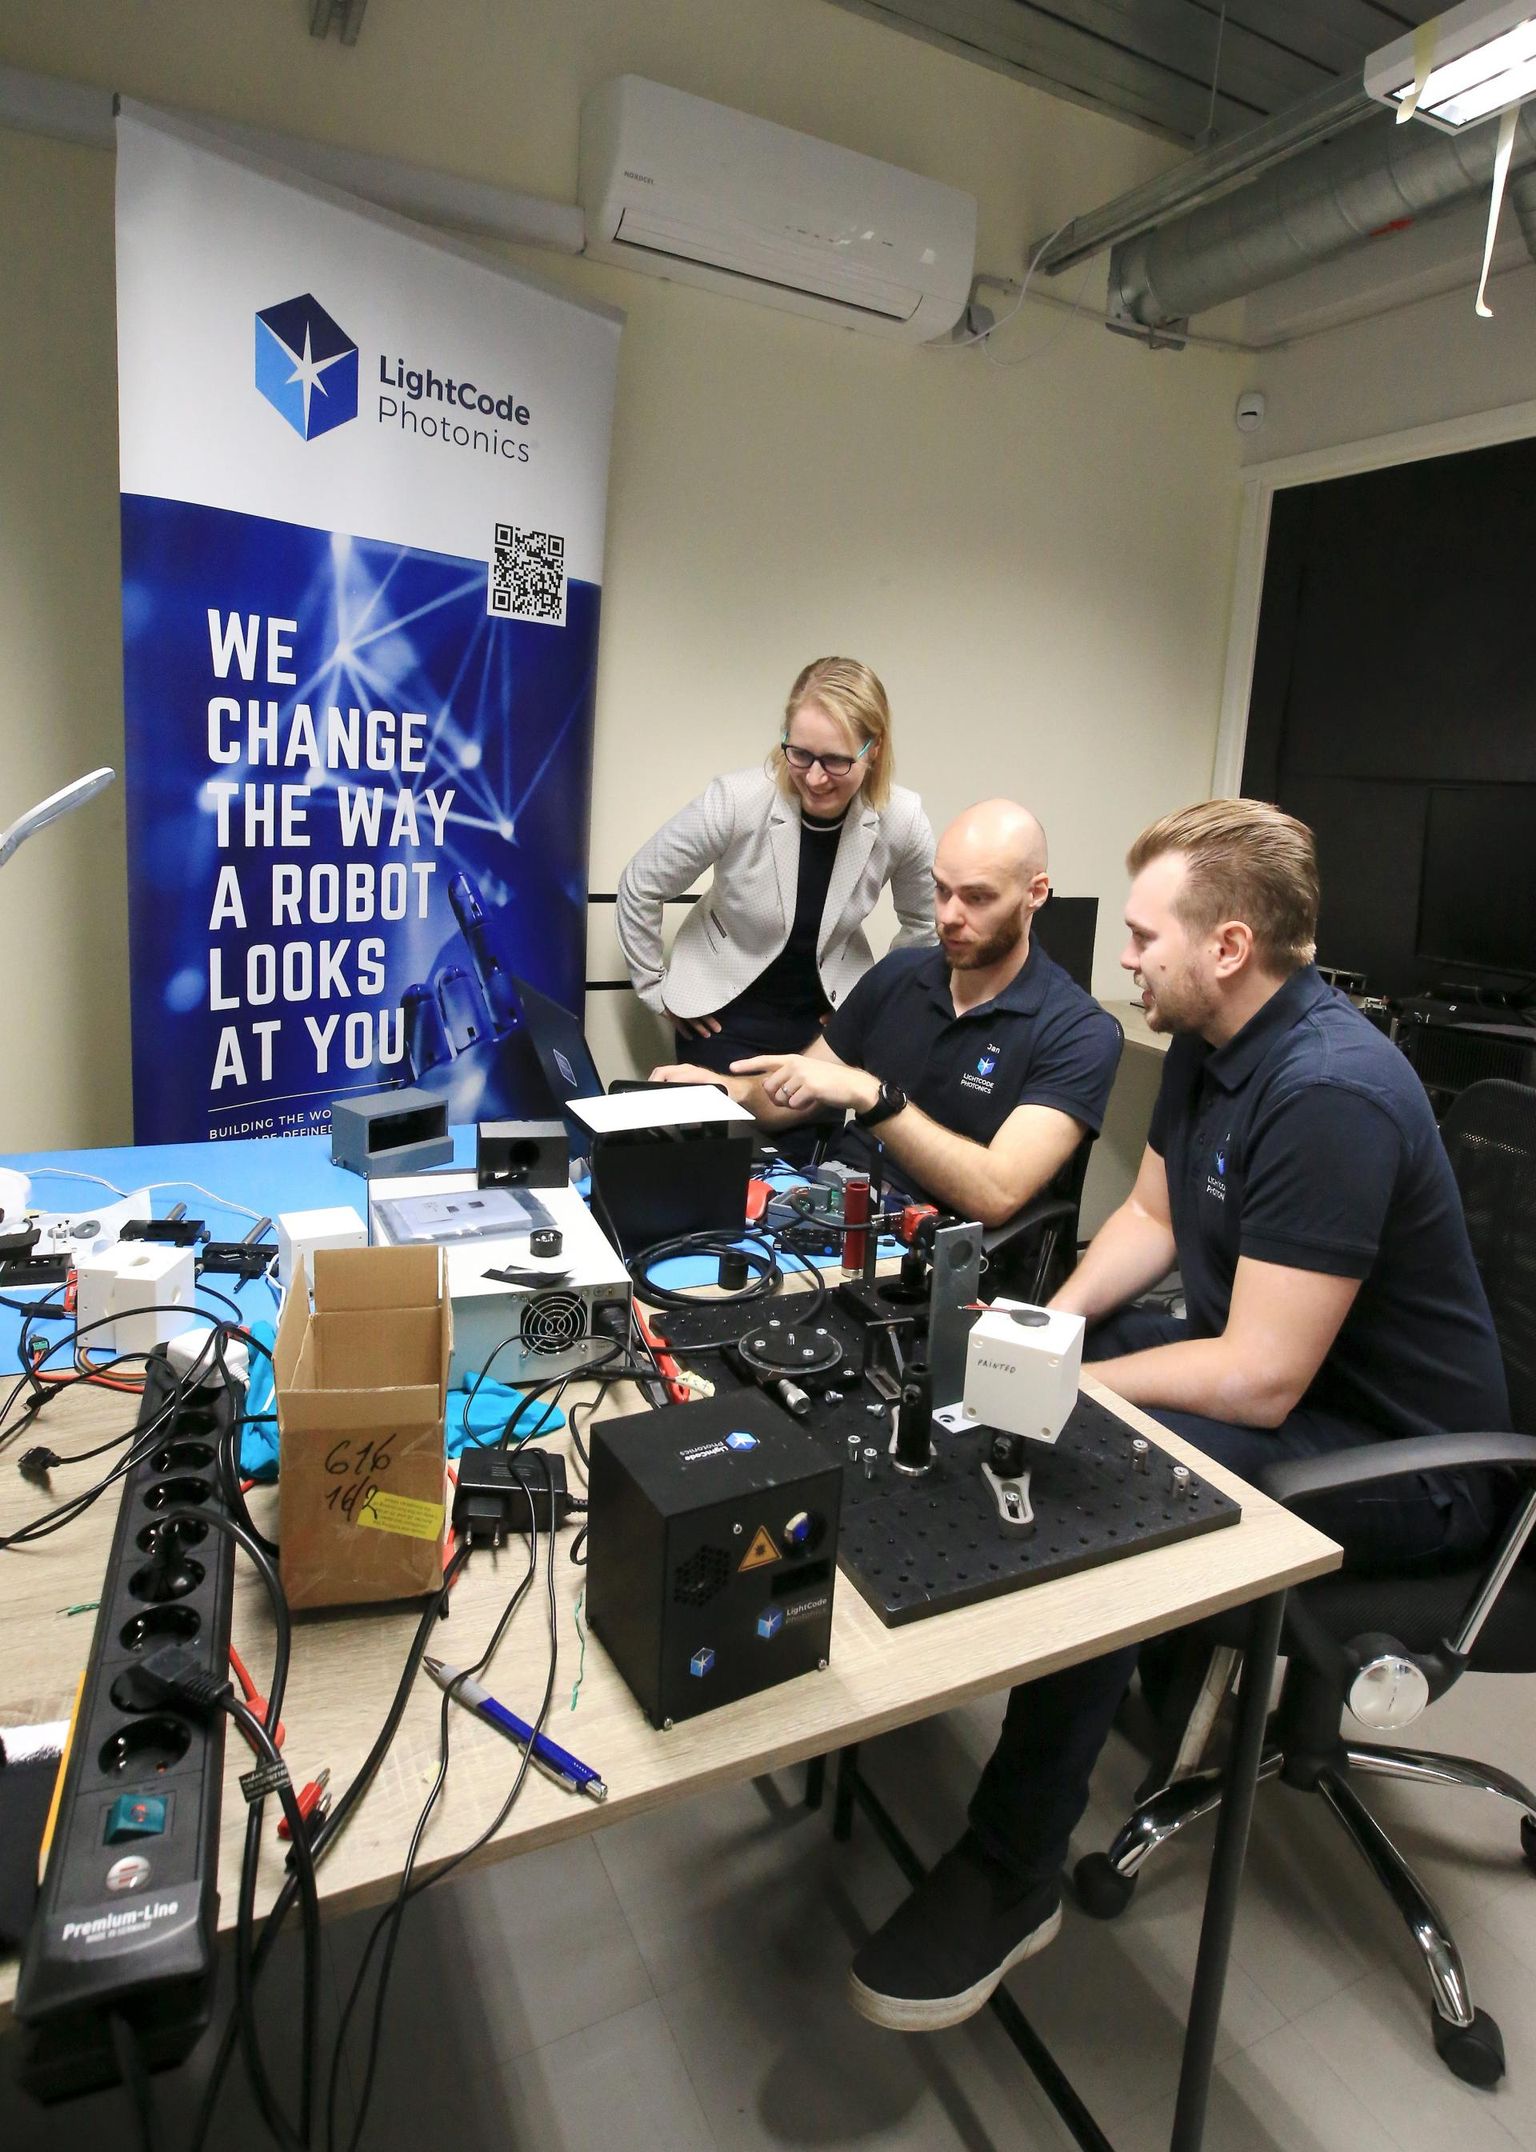 Üks messil osalev Tartust pärit ettevõte on LightCode Photonics, mille laboris ragistavad igapäevaselt ajusid Heli Valtna, Jan Bogdanov ja Martin Karu. Seda selleks, et tulevikus suudaksid robotid inimeste eest suurema osa tüütutest töödest ära teha.